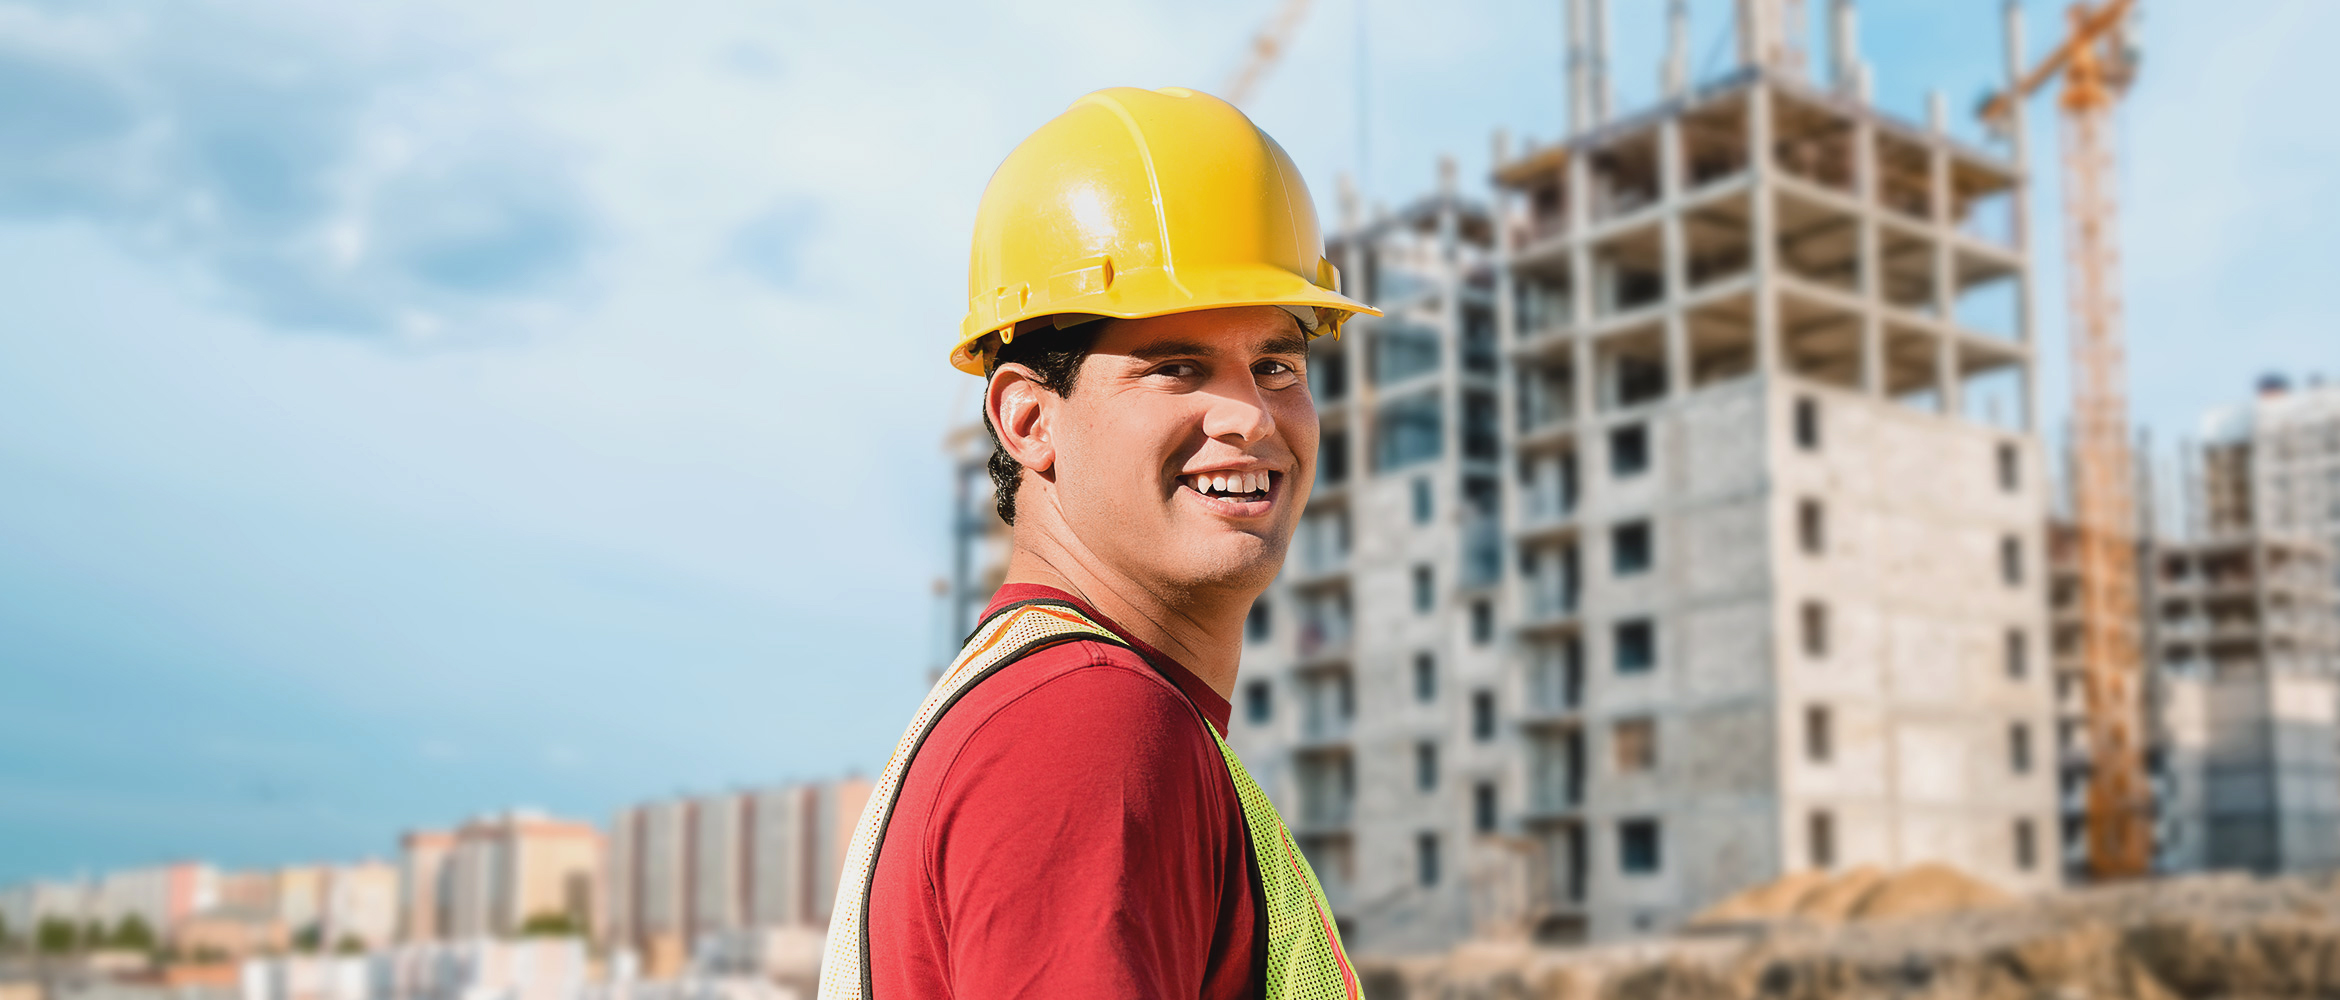 Ein lächelnder Bauarbeiter mit gelbem Helm und reflektierender Weste steht vor einer Baustelle, das Bild porträtiert Arbeitszufriedenheit und Sicherheitsbewusstsein im Baugewerbe.